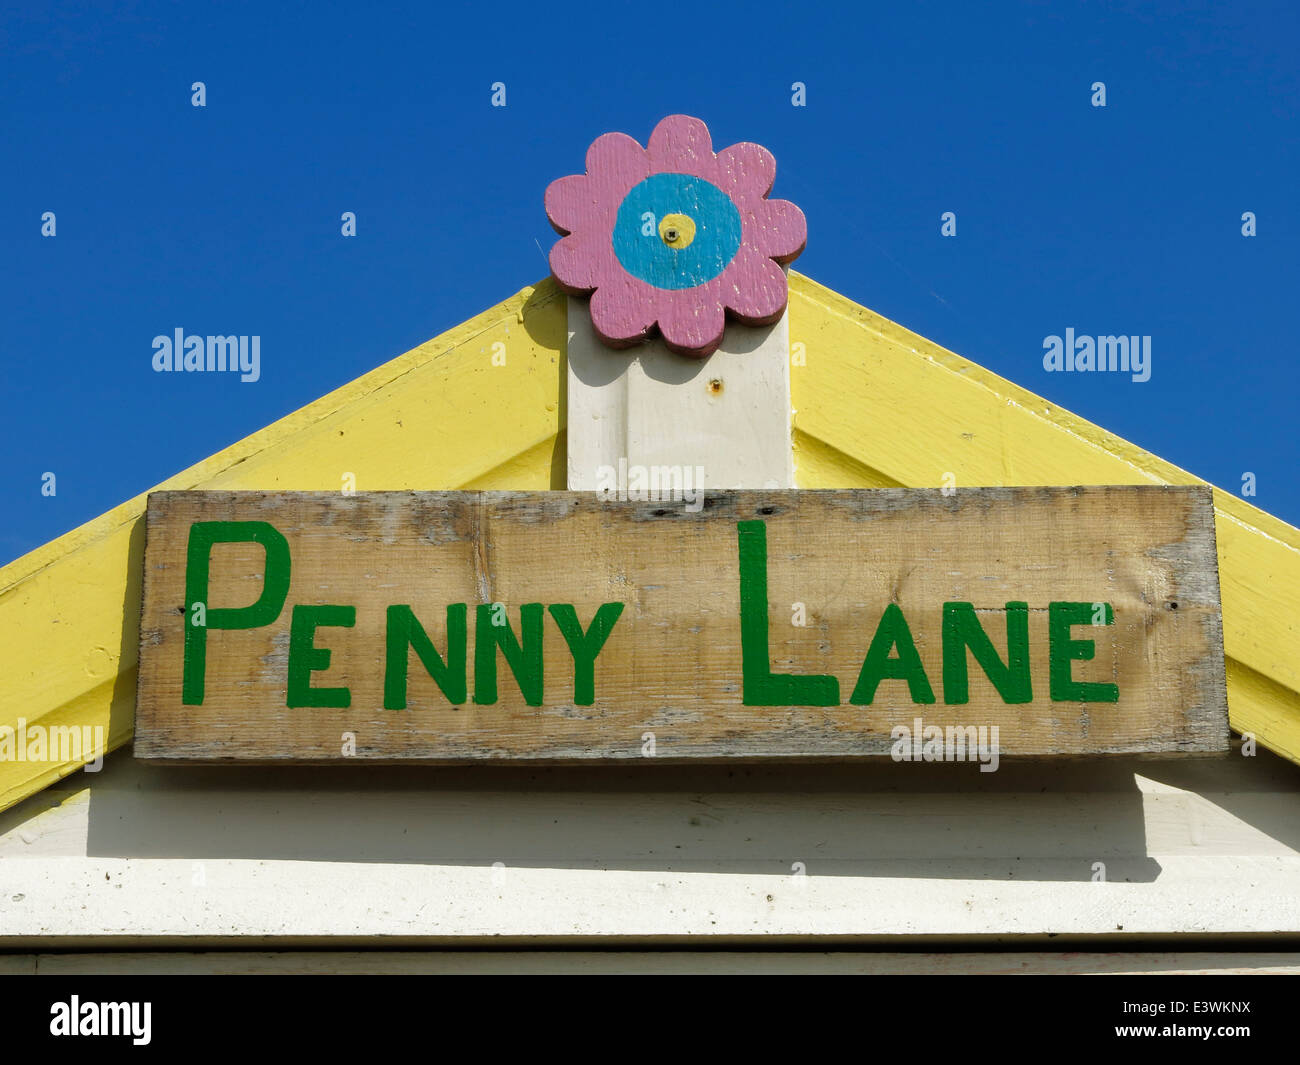 Penny Lane, signe sur une cabane de plage. Banque D'Images